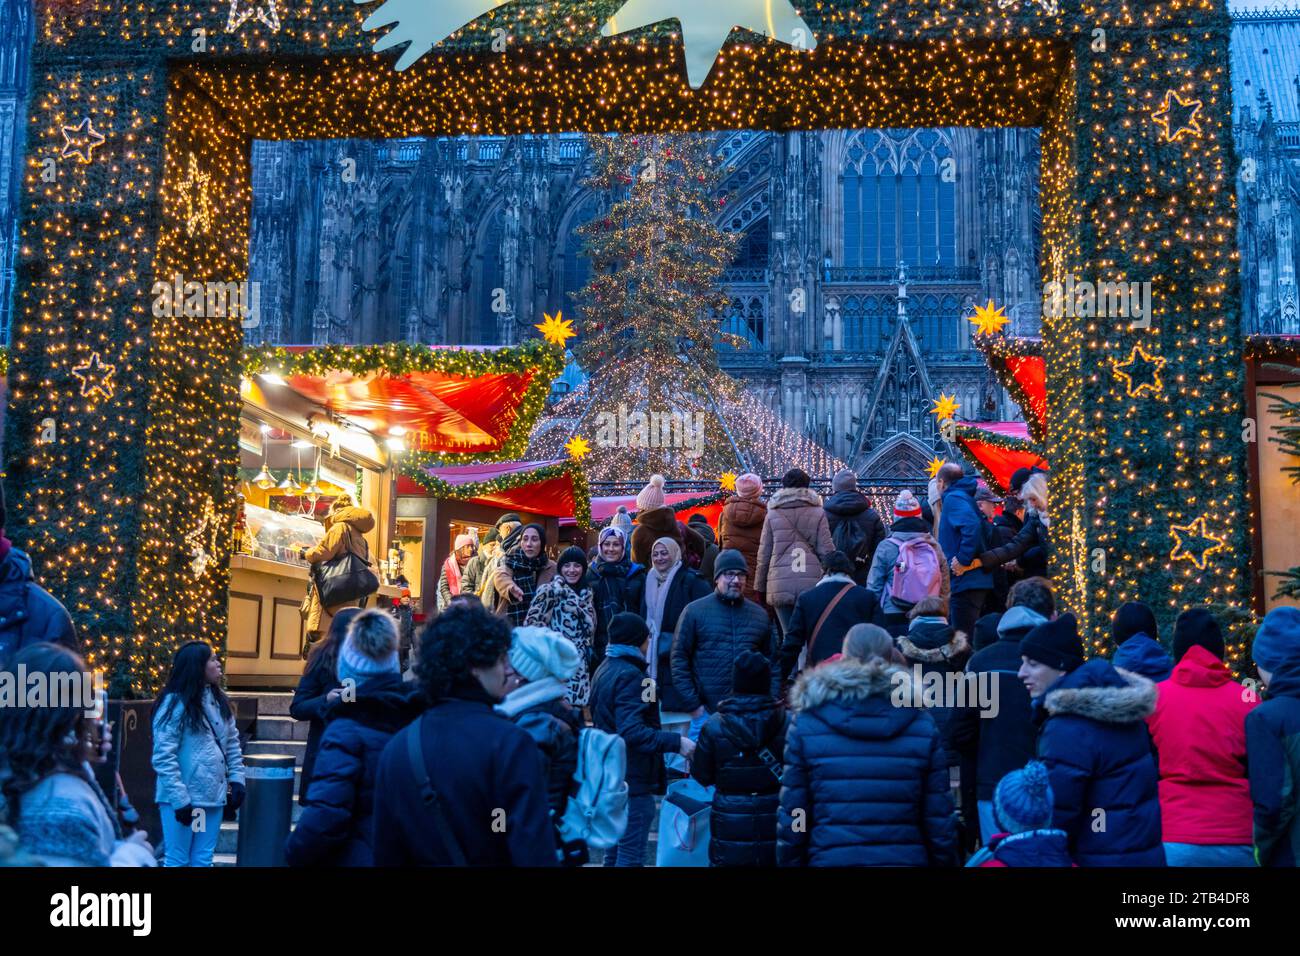 Weihnachtsmarkt auf dem Roncalli Platz am Dom, in der Innenstadt von Köln, Verkaufsoffener Sonntag in der Kölner Innenstadt, 1. Adventswochenende, NRW Stock Photo